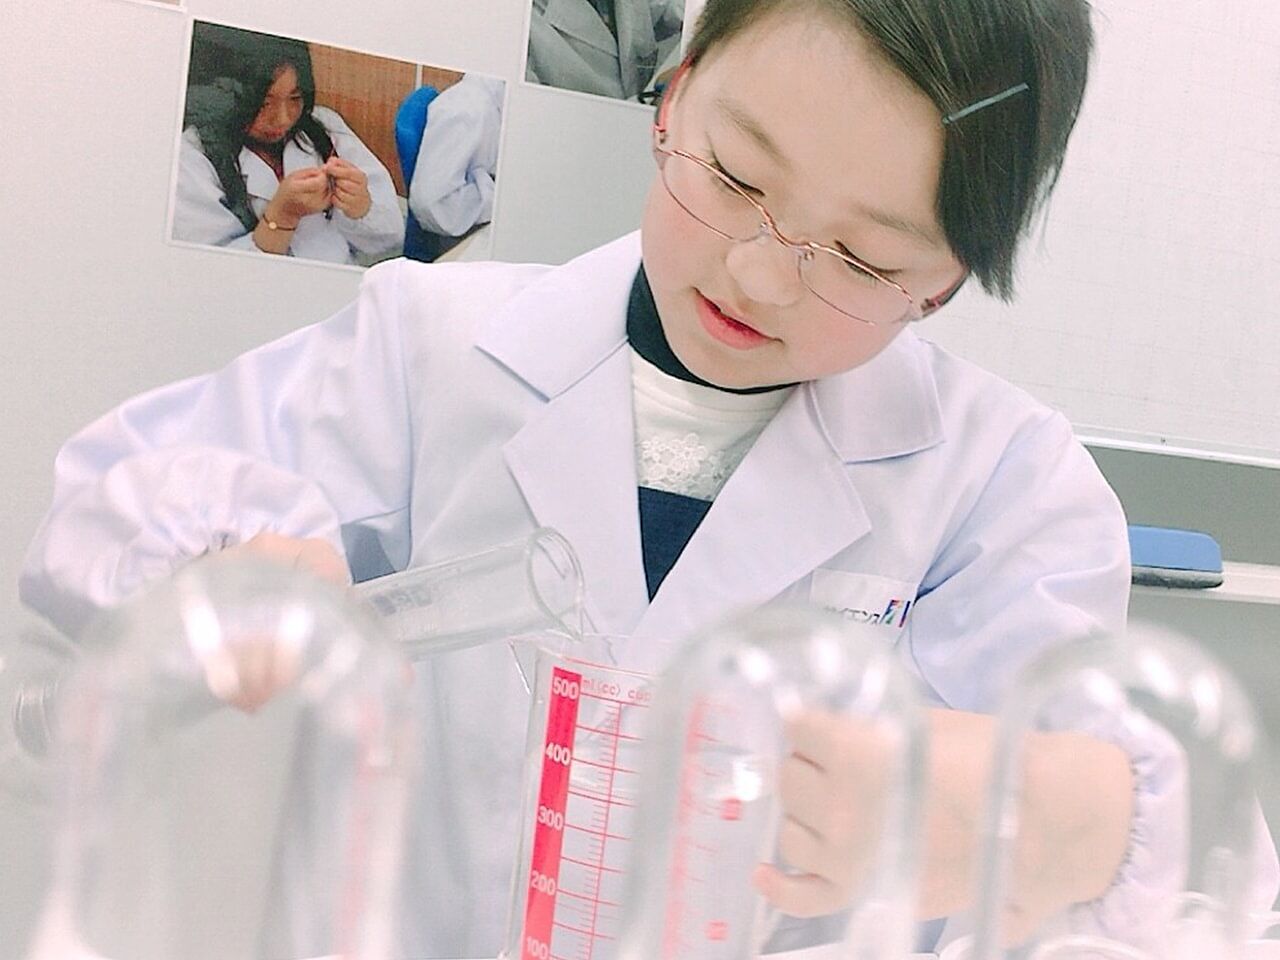 女の子がコップを持って理科の実験をしている画像